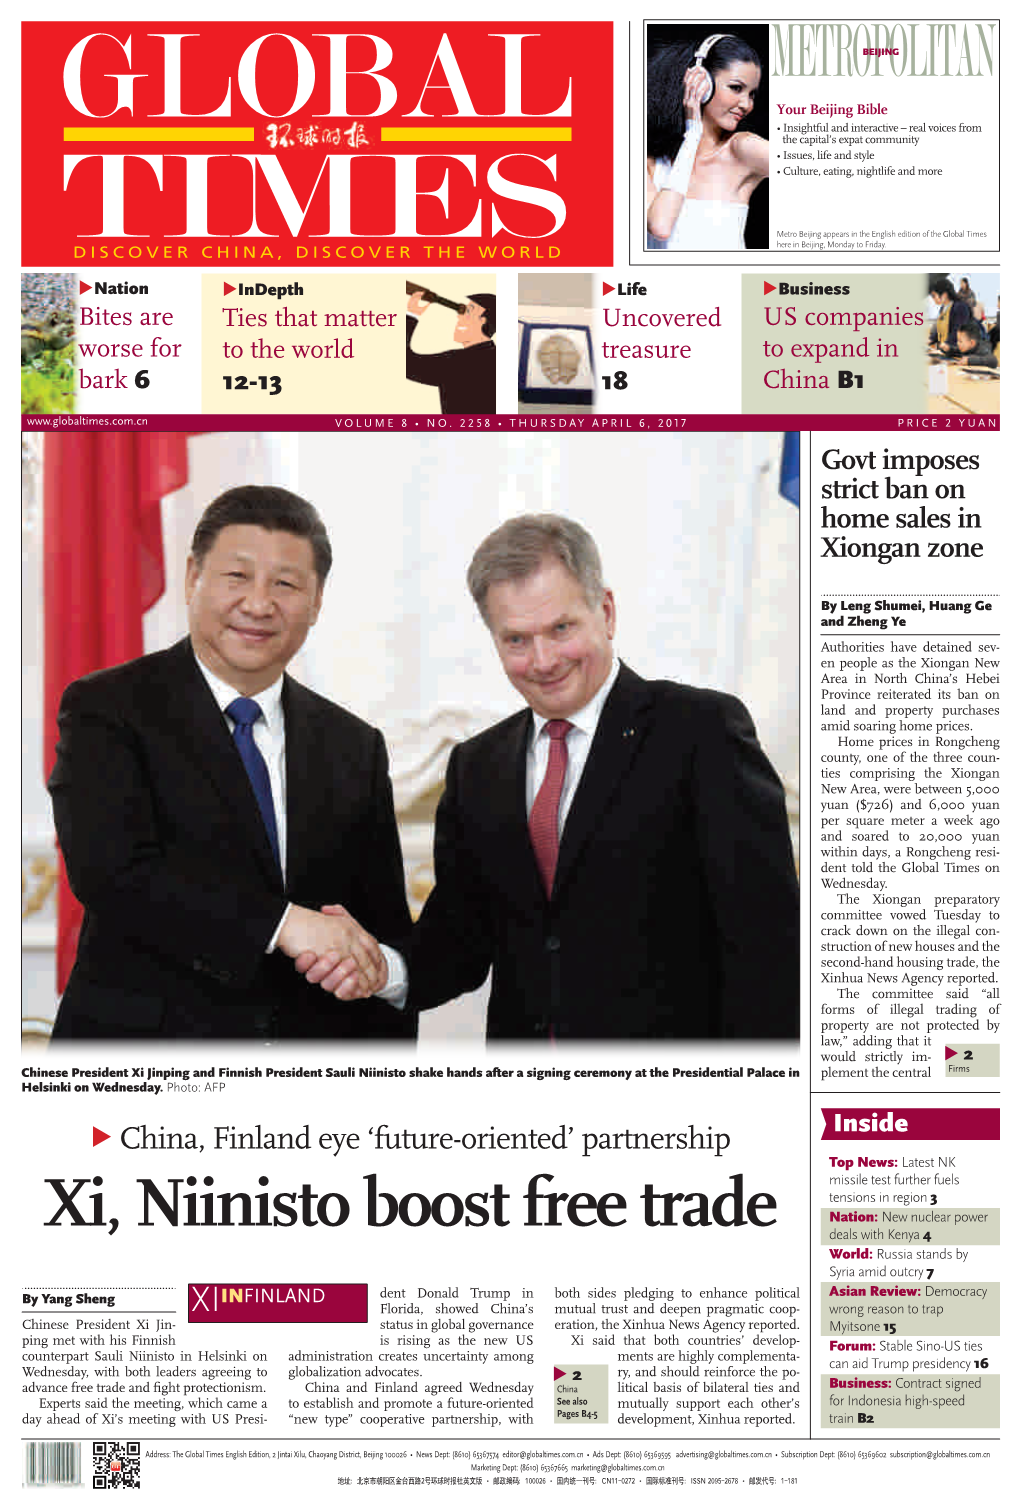 Xi, Niinisto Boost Free Trade